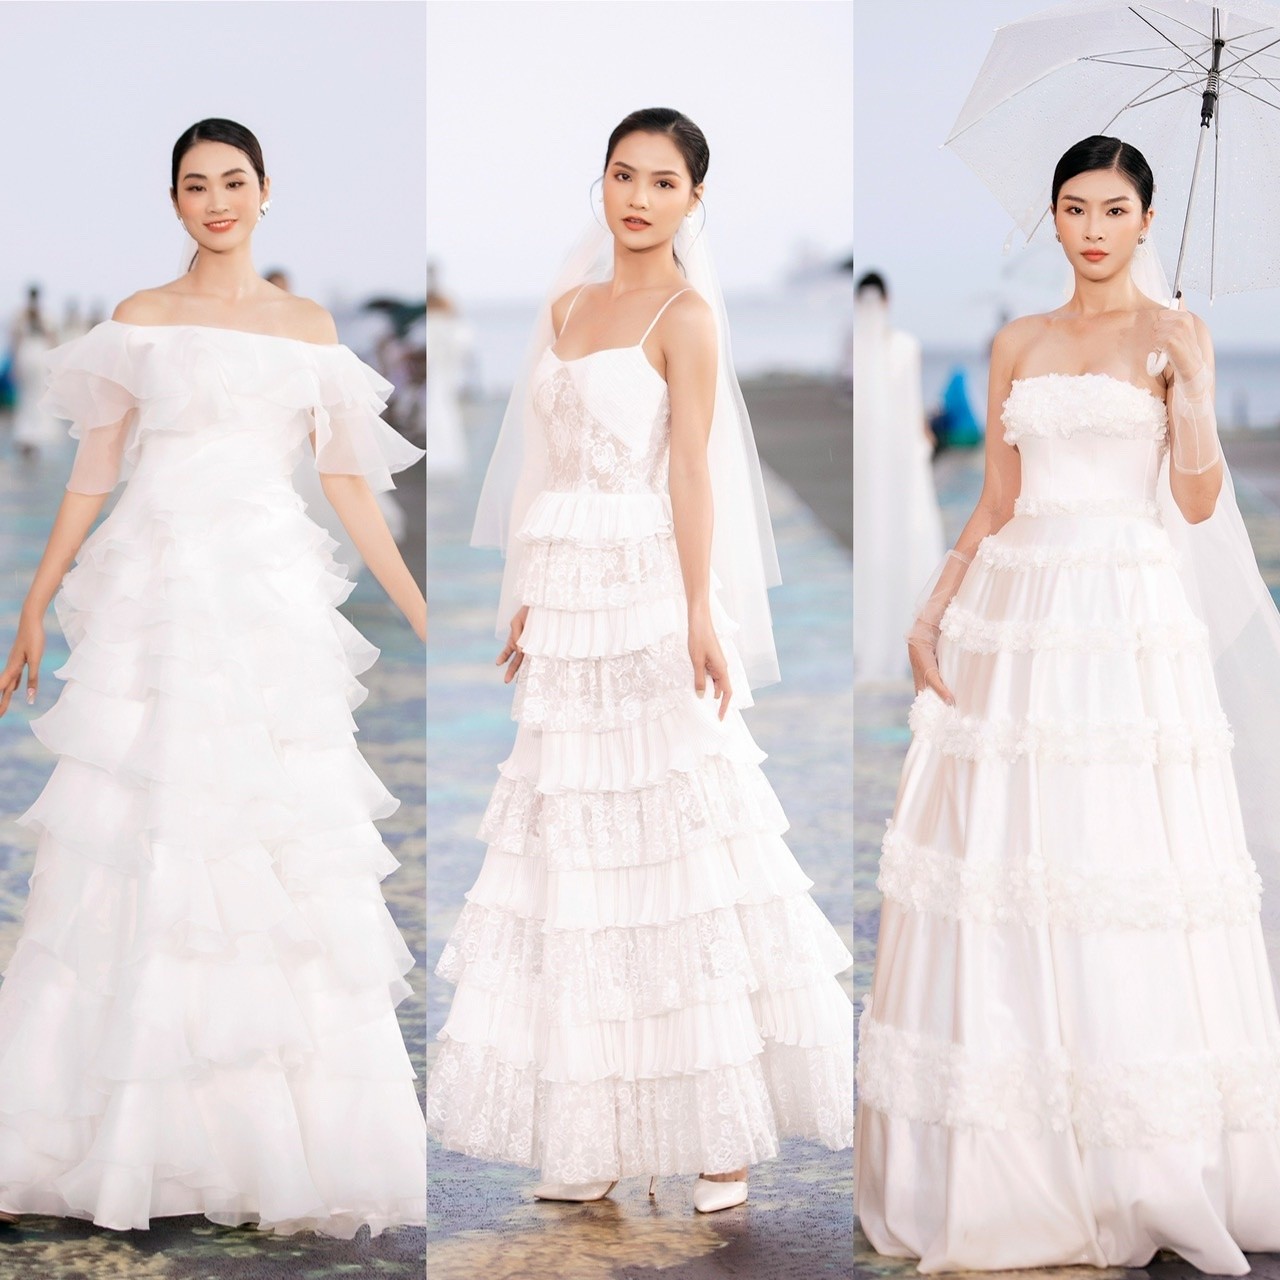 Hoa hậu Tiểu Vy, Á hậu Phương Anh đọ sắc khi diện váy cưới-10